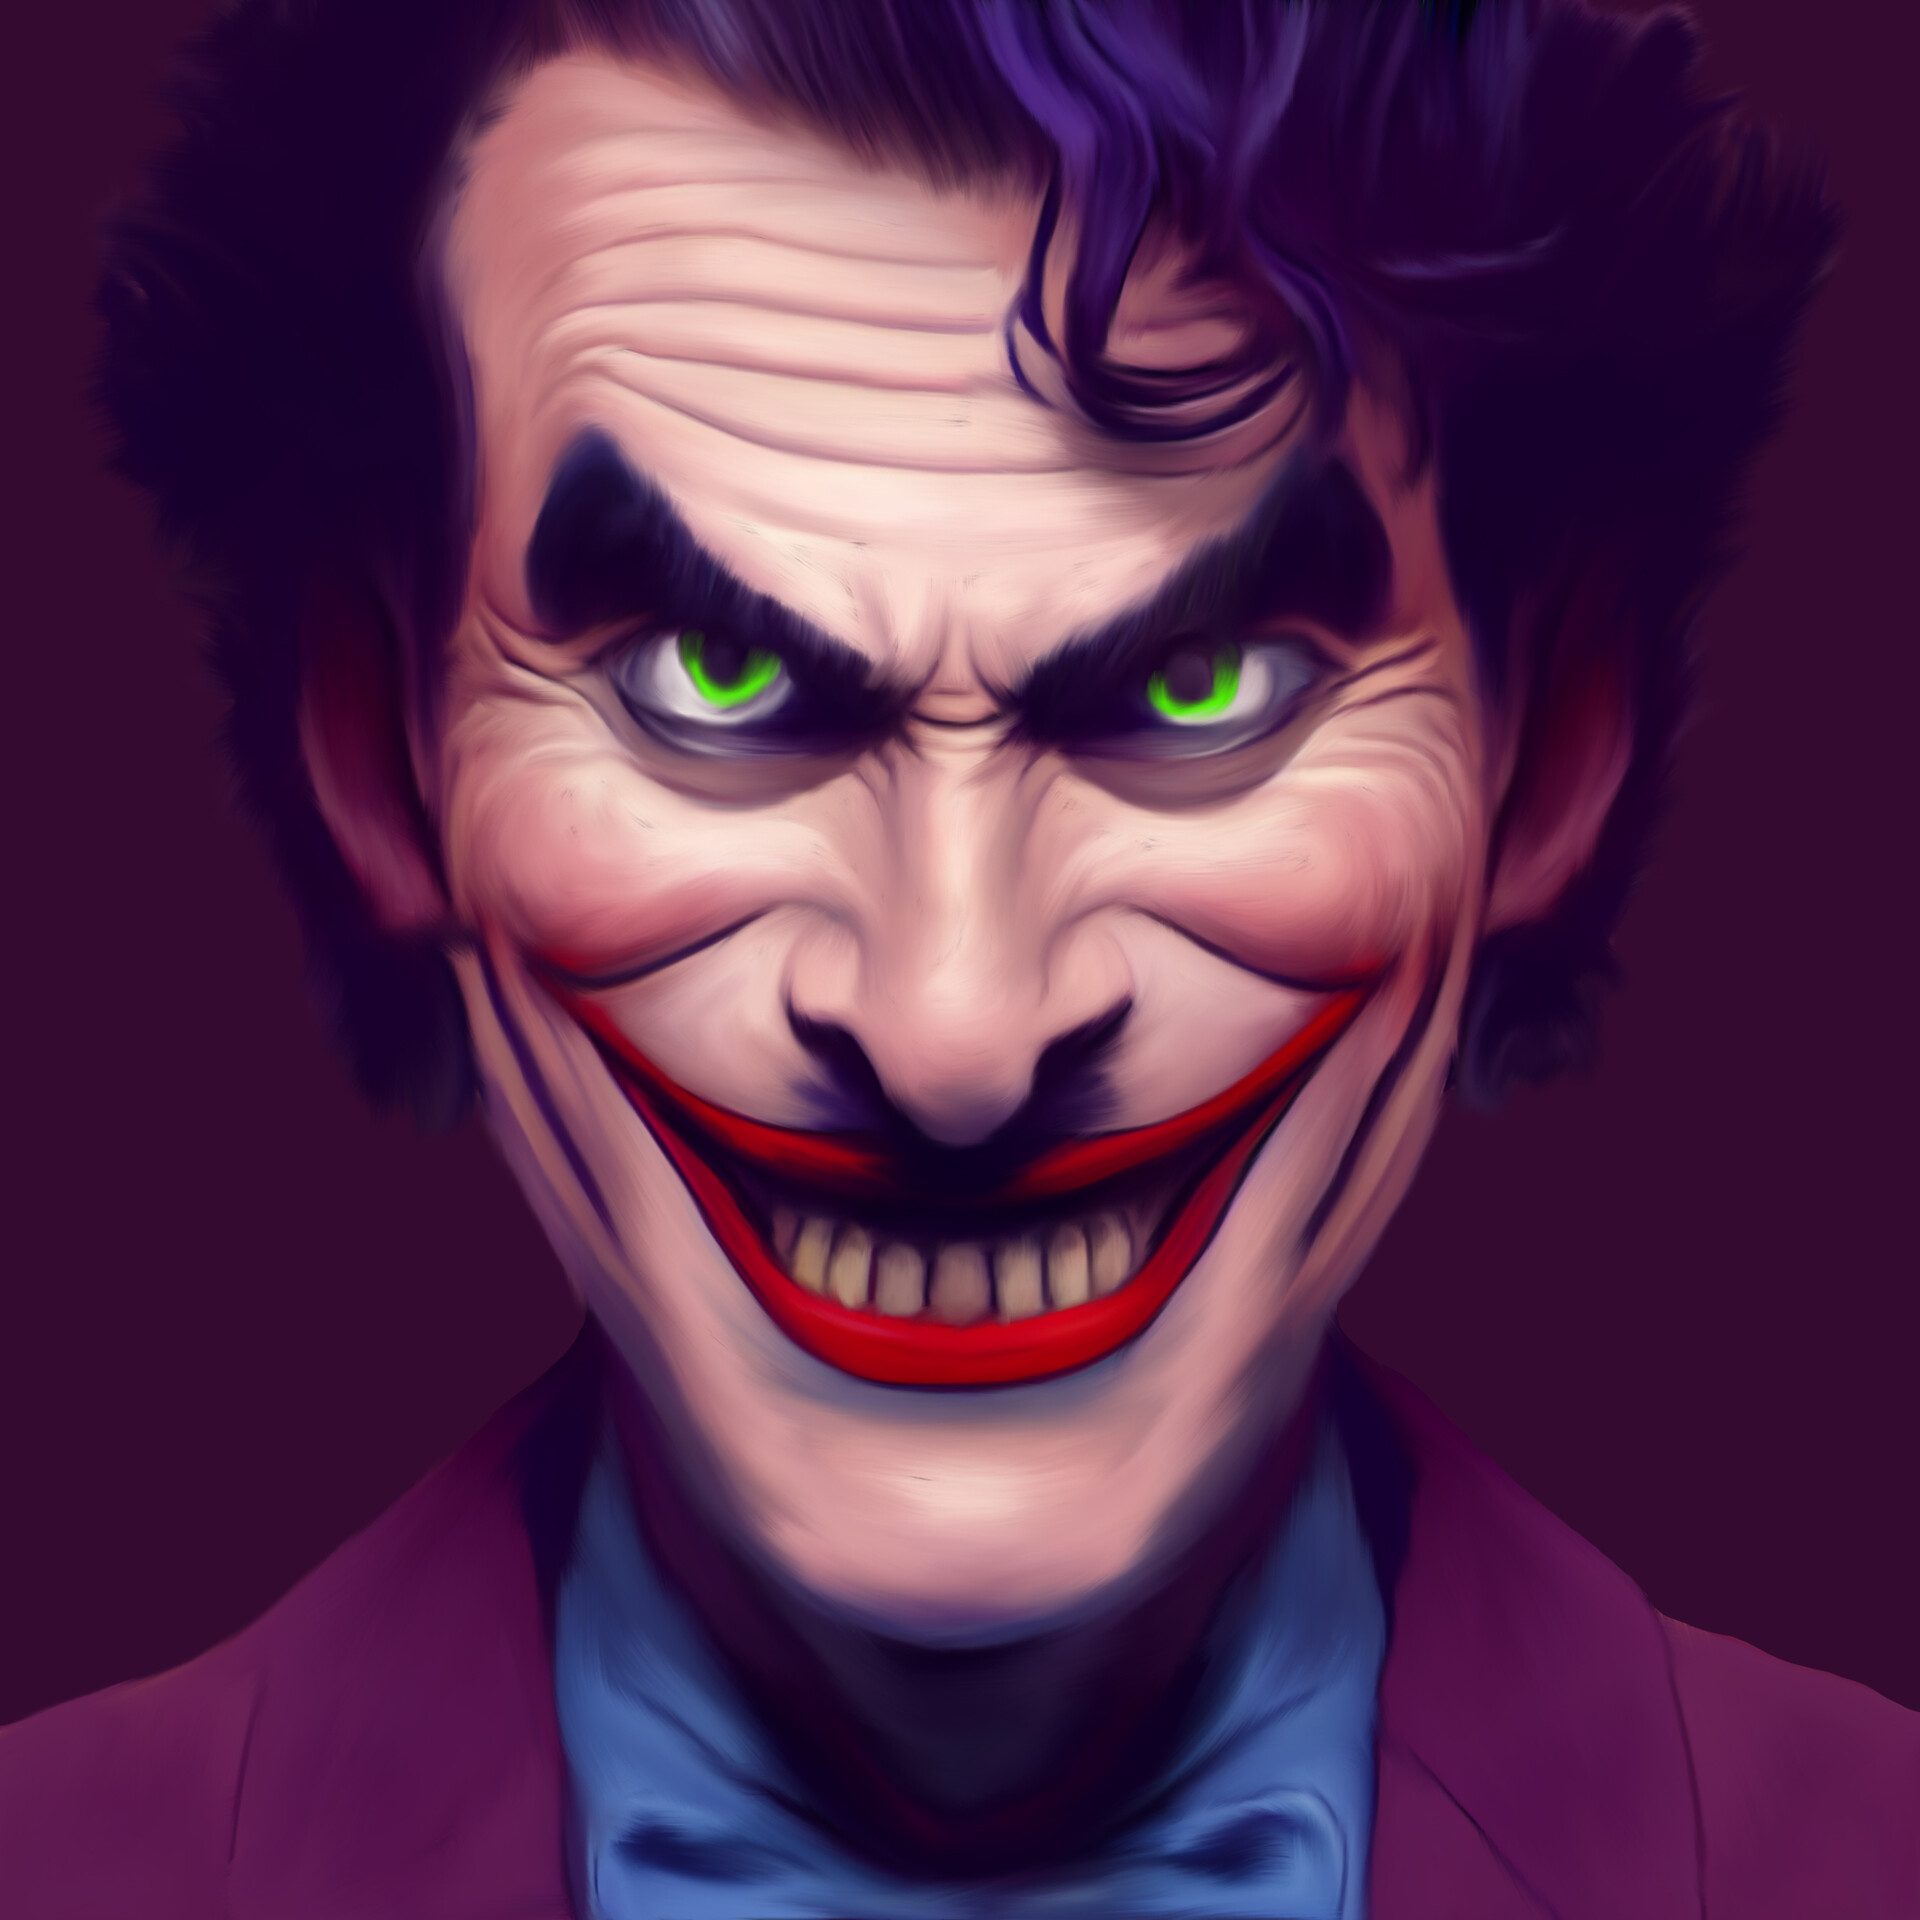 ArtStation - Joker Digital Art